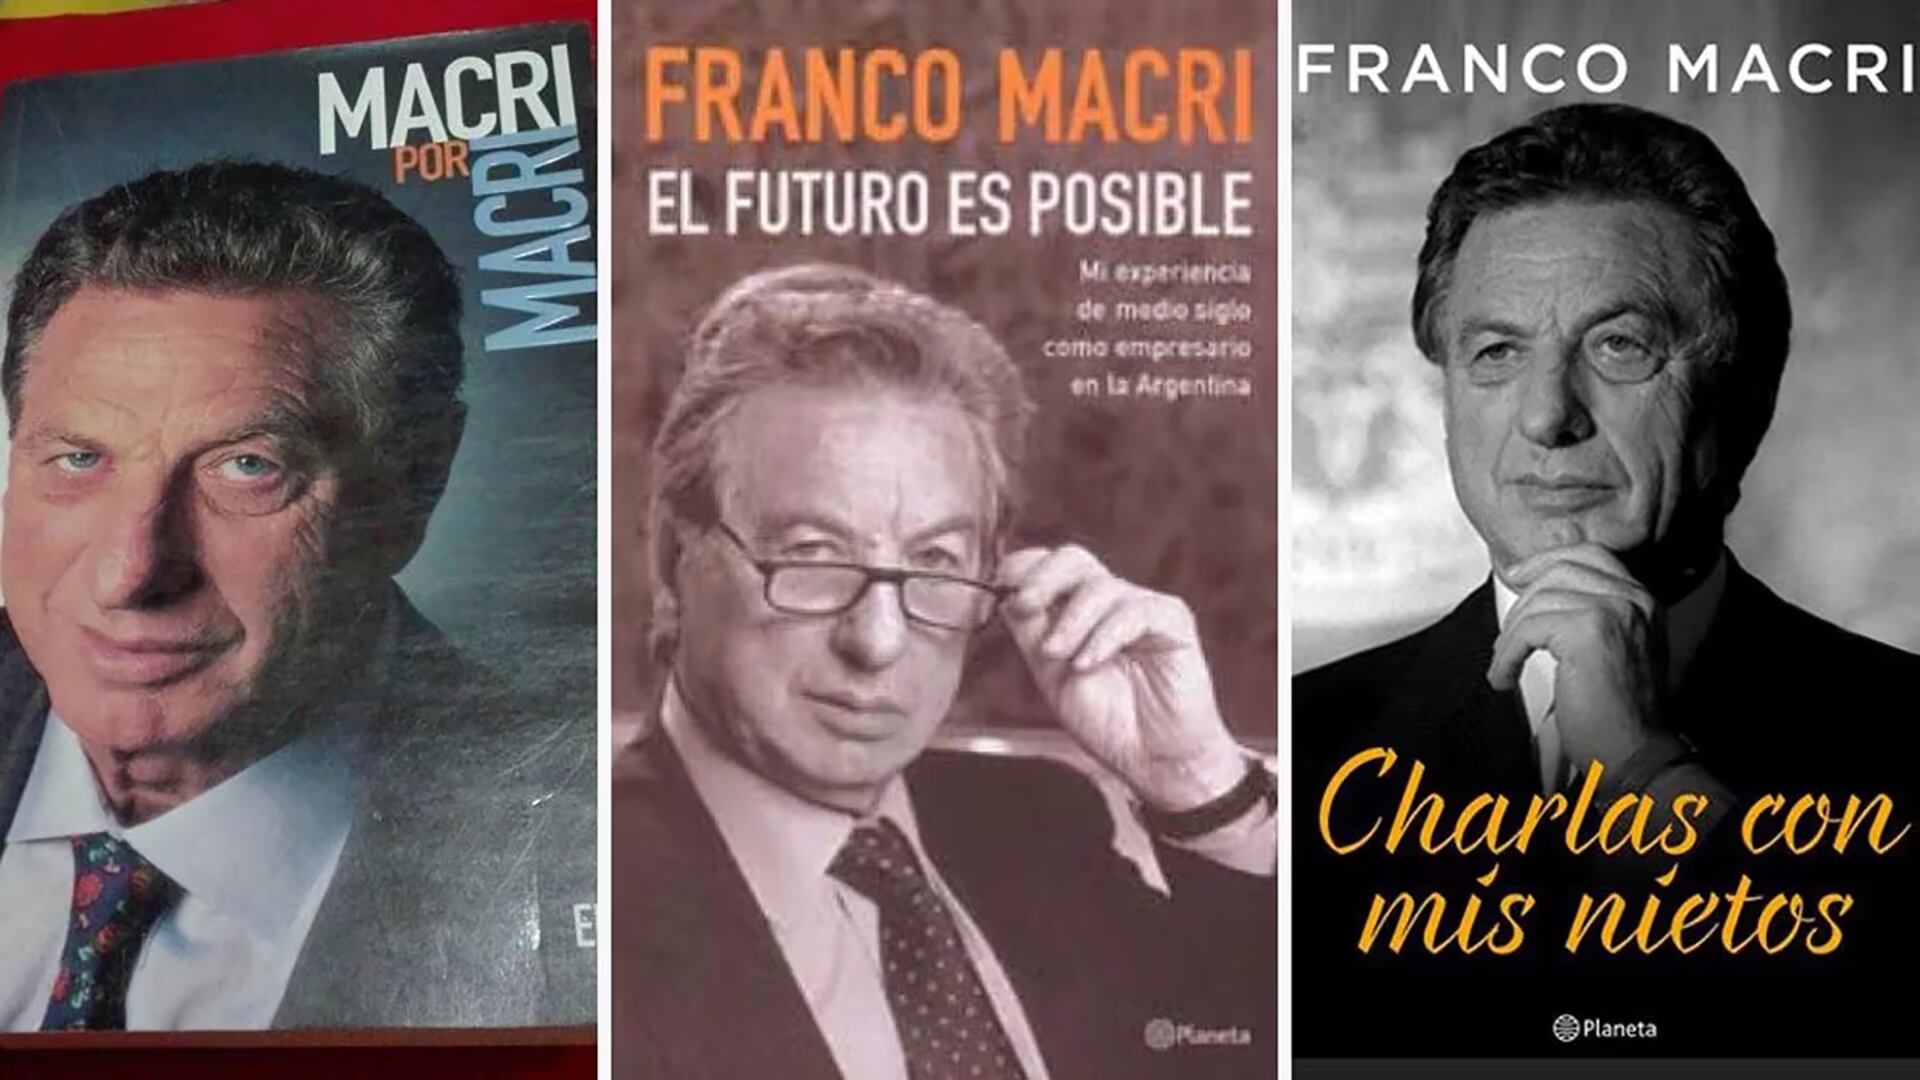 Franco Macri